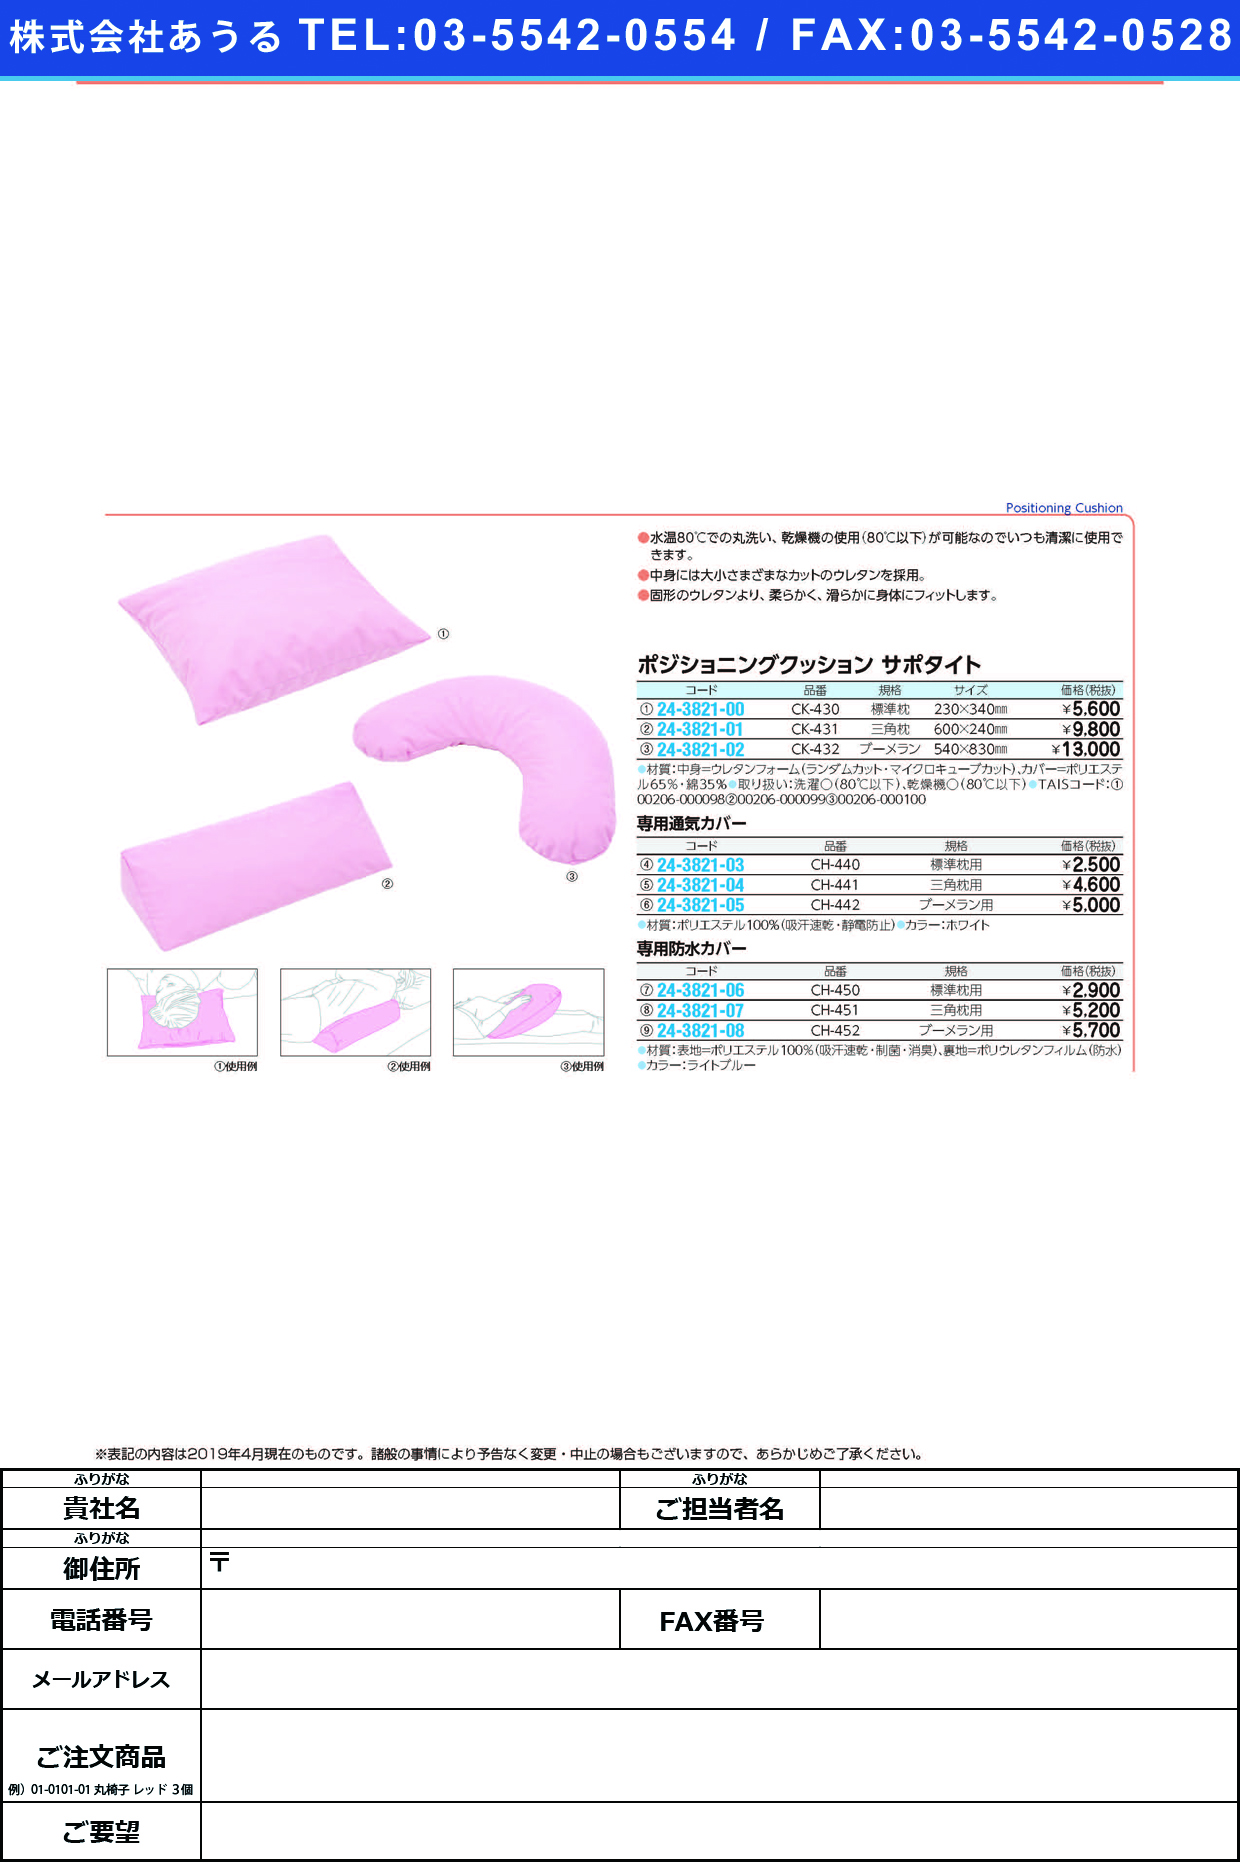 (24-3821-02)ポジショニングクッションサポタイト CK-432(ﾌﾞｰﾒﾗﾝ) ﾎﾟｼﾞｼｮﾆﾝｸﾞｸｯｼｮﾝｻﾎﾟﾀｲ(ケープ)【1個単位】【2019年カタログ商品】